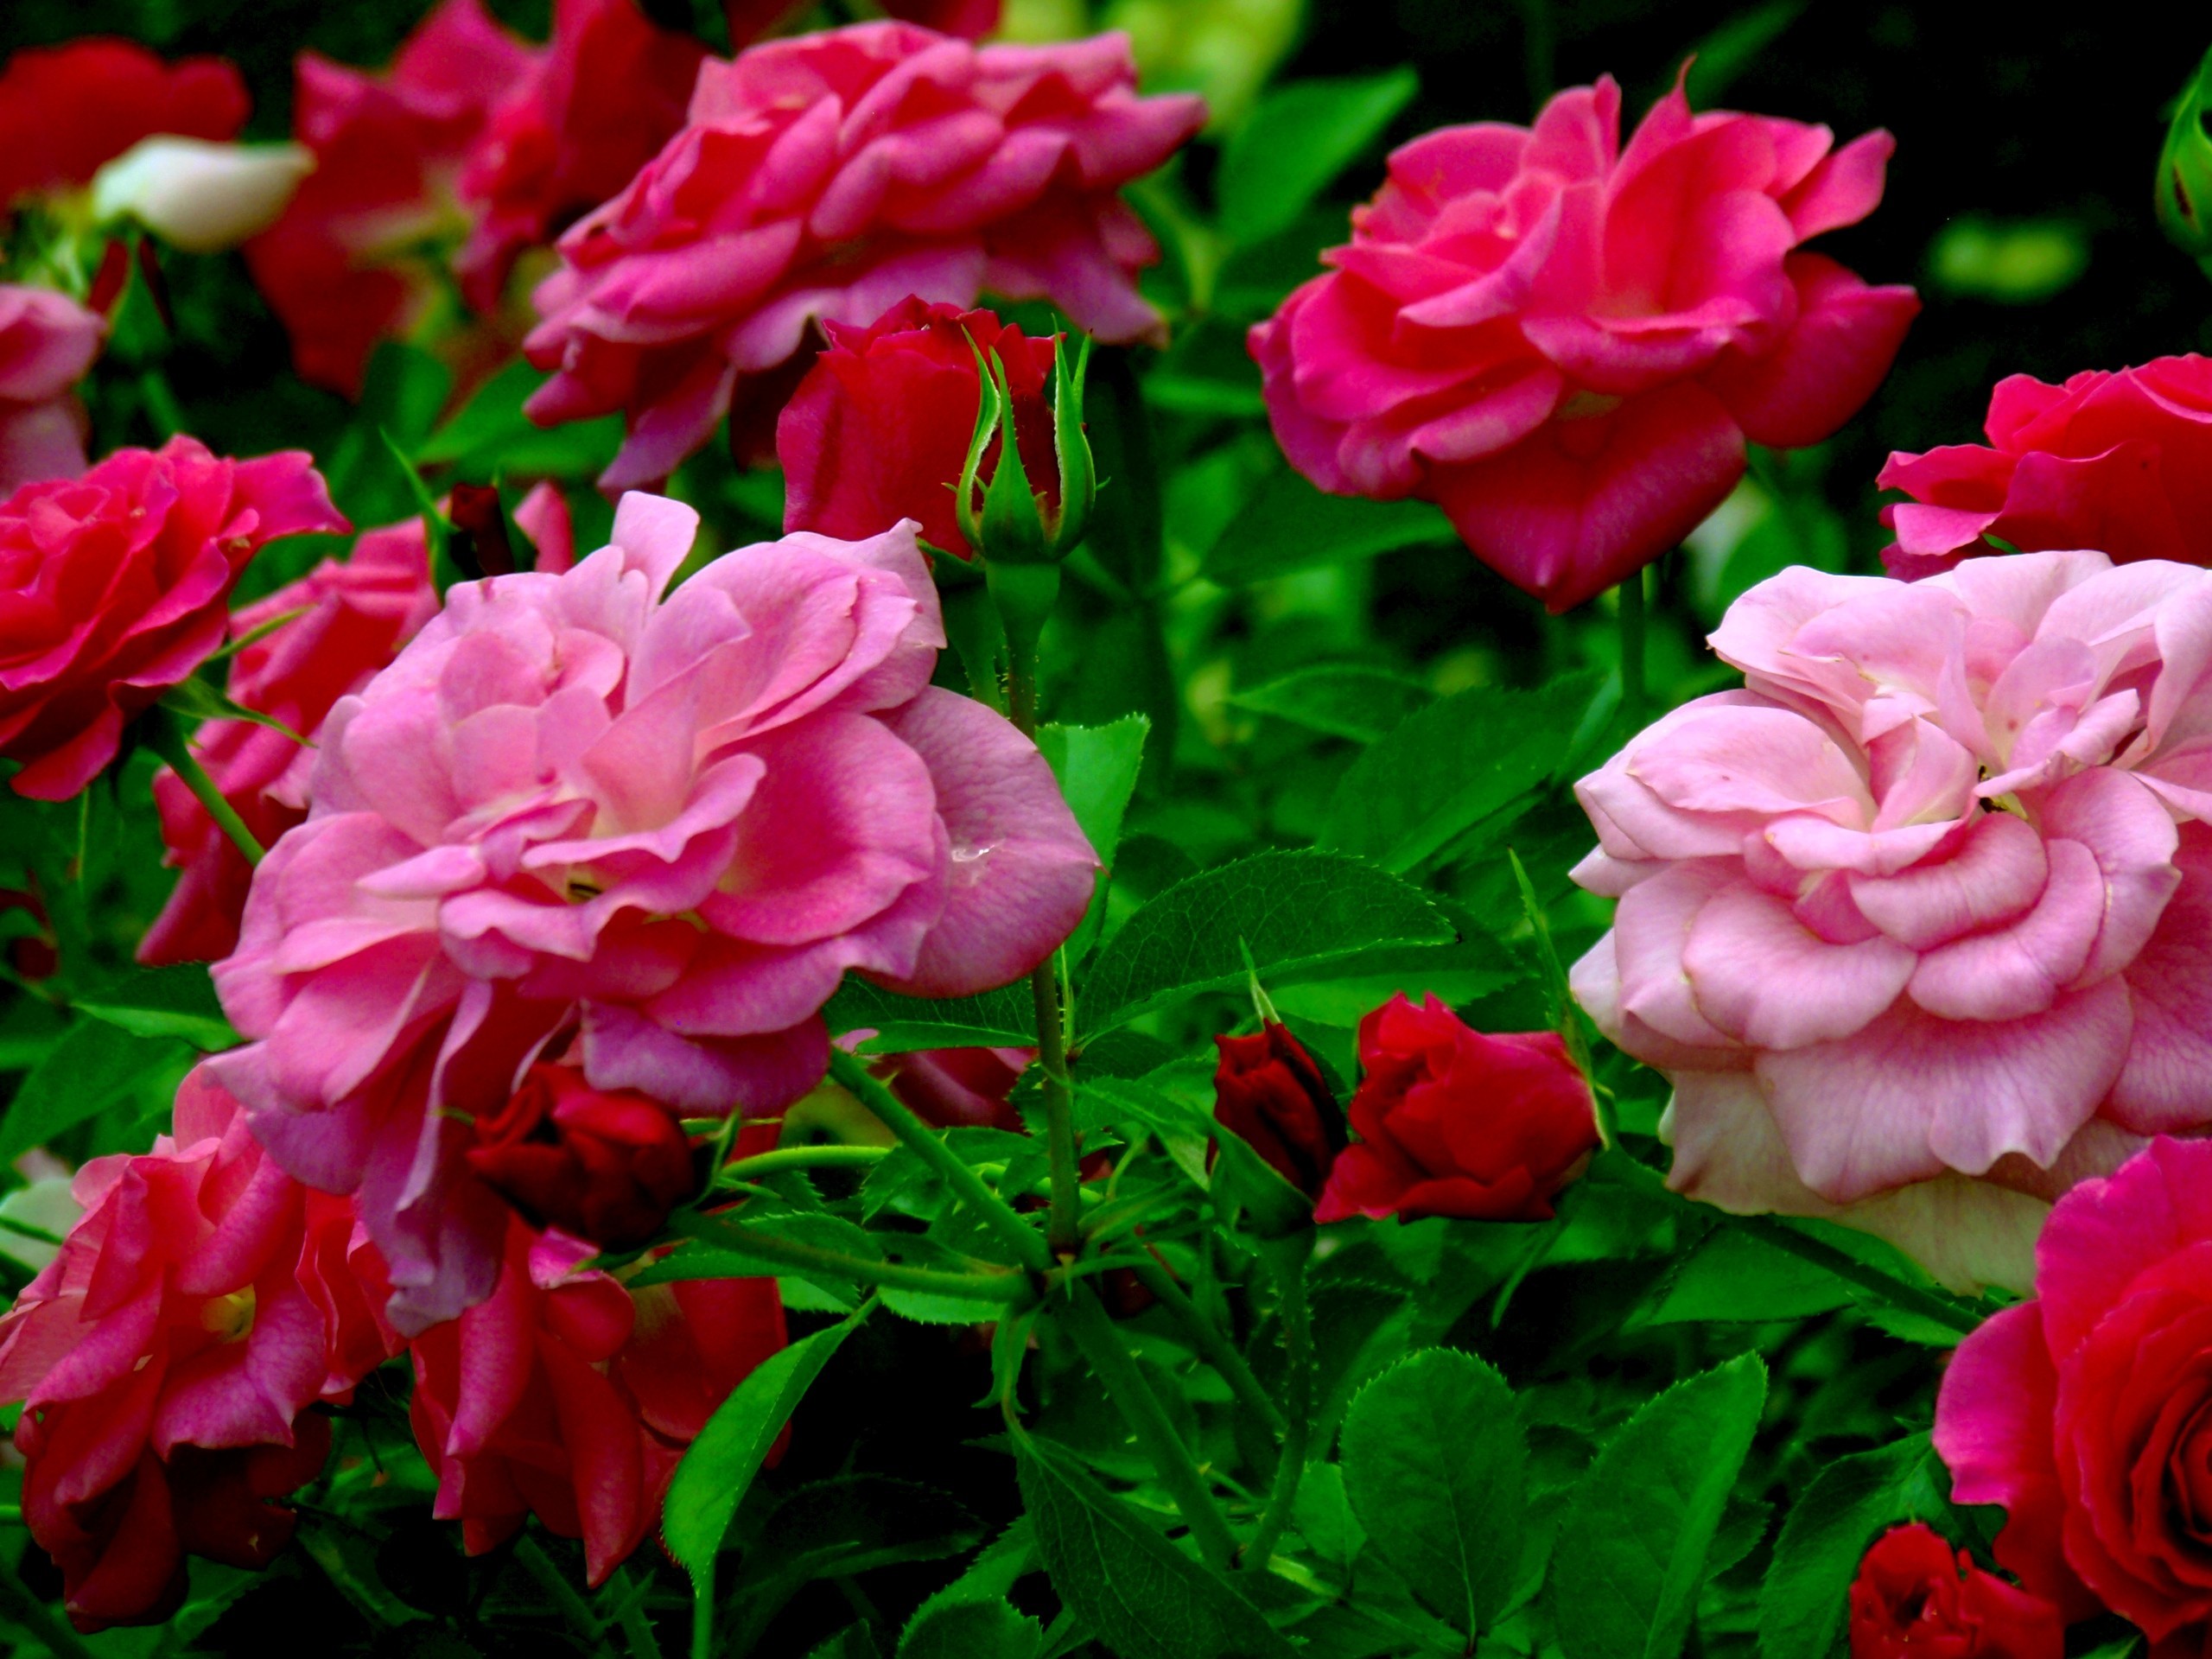 Wallpaper Flowers Nature Rose Pink 16 Widescreen Light - Dark Pink Rose Bush - HD Wallpaper 